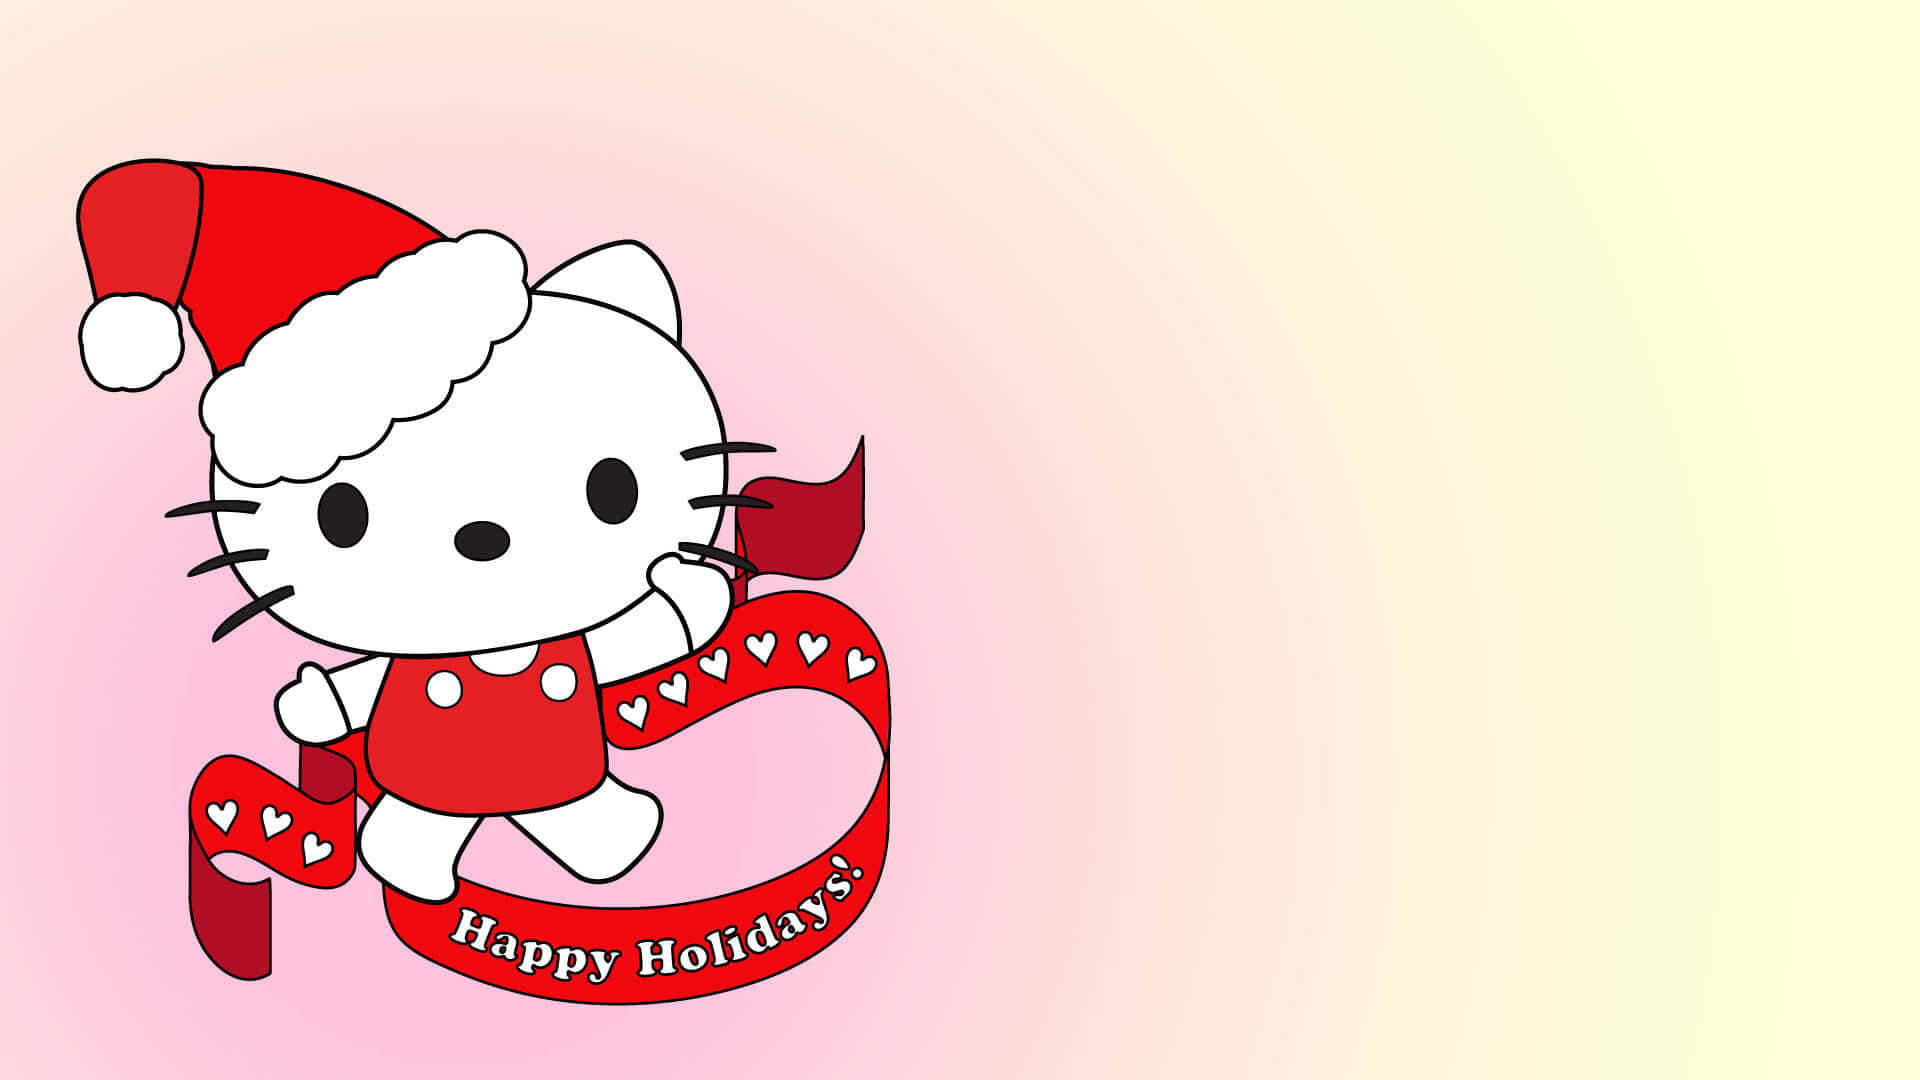 Sfondodel Poster Di Hello Kitty Buone Vacanze